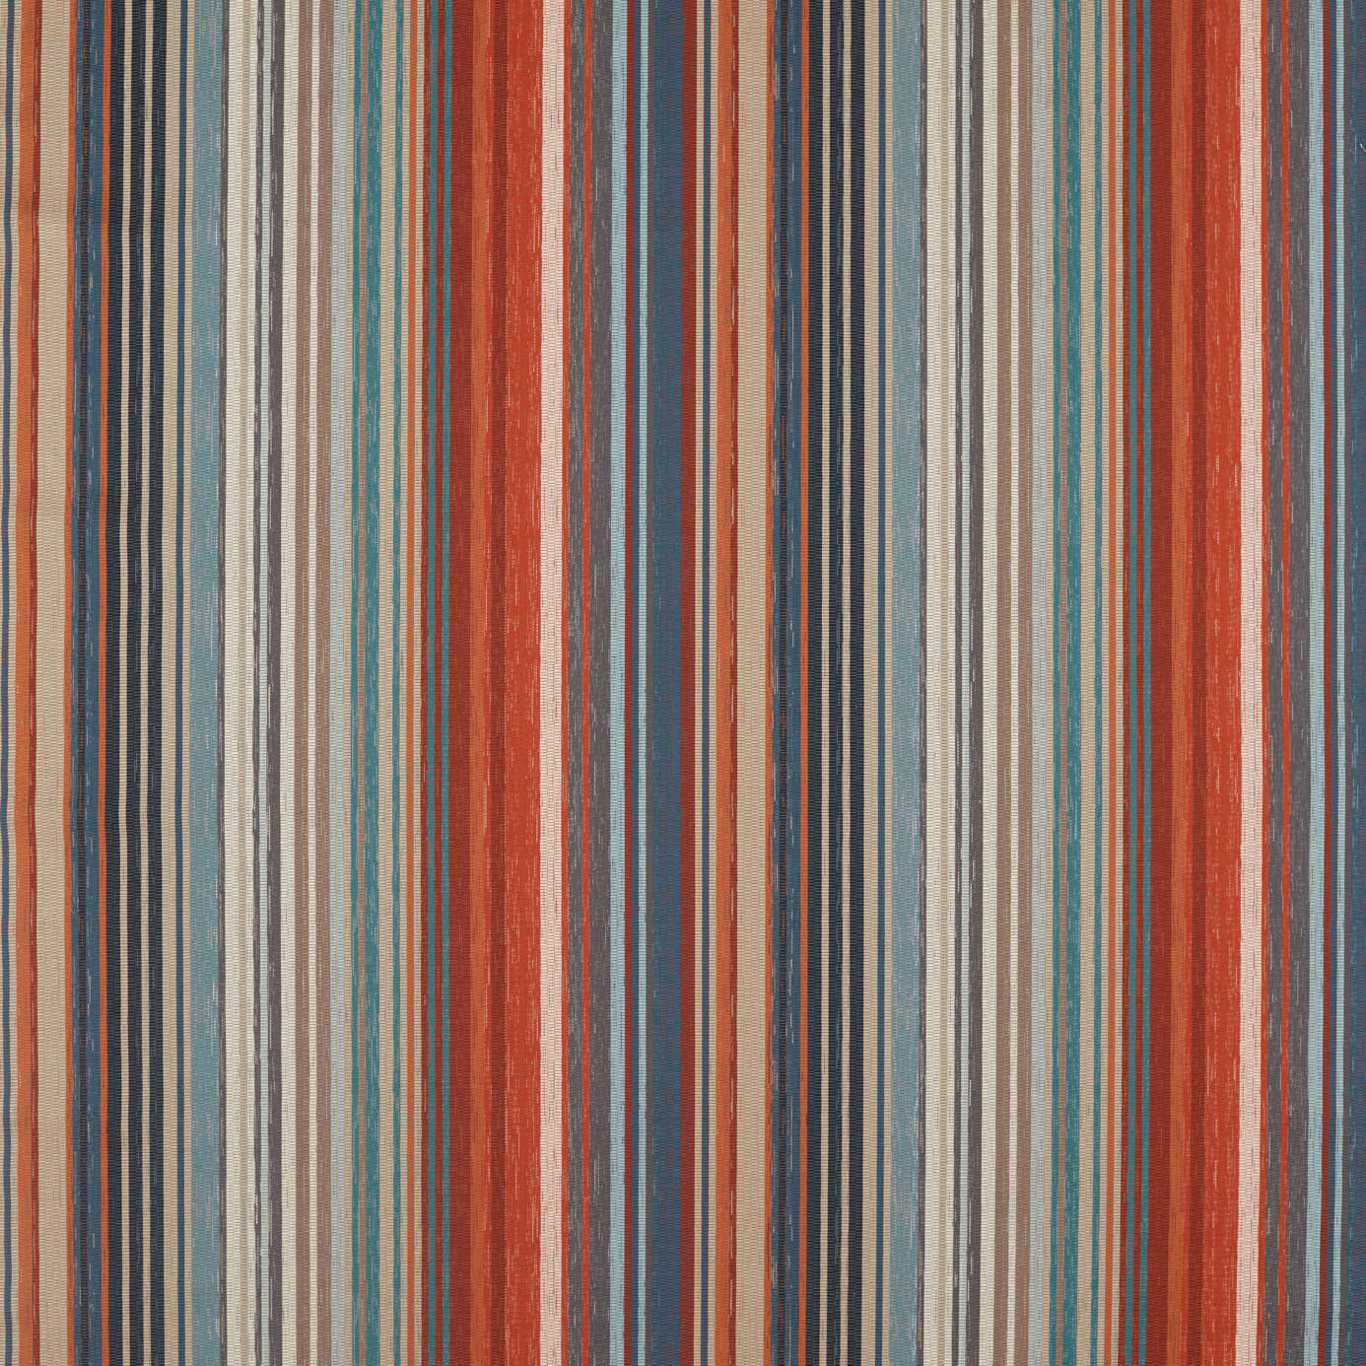 Spectro Teal Sedonia Rust HMNI132825